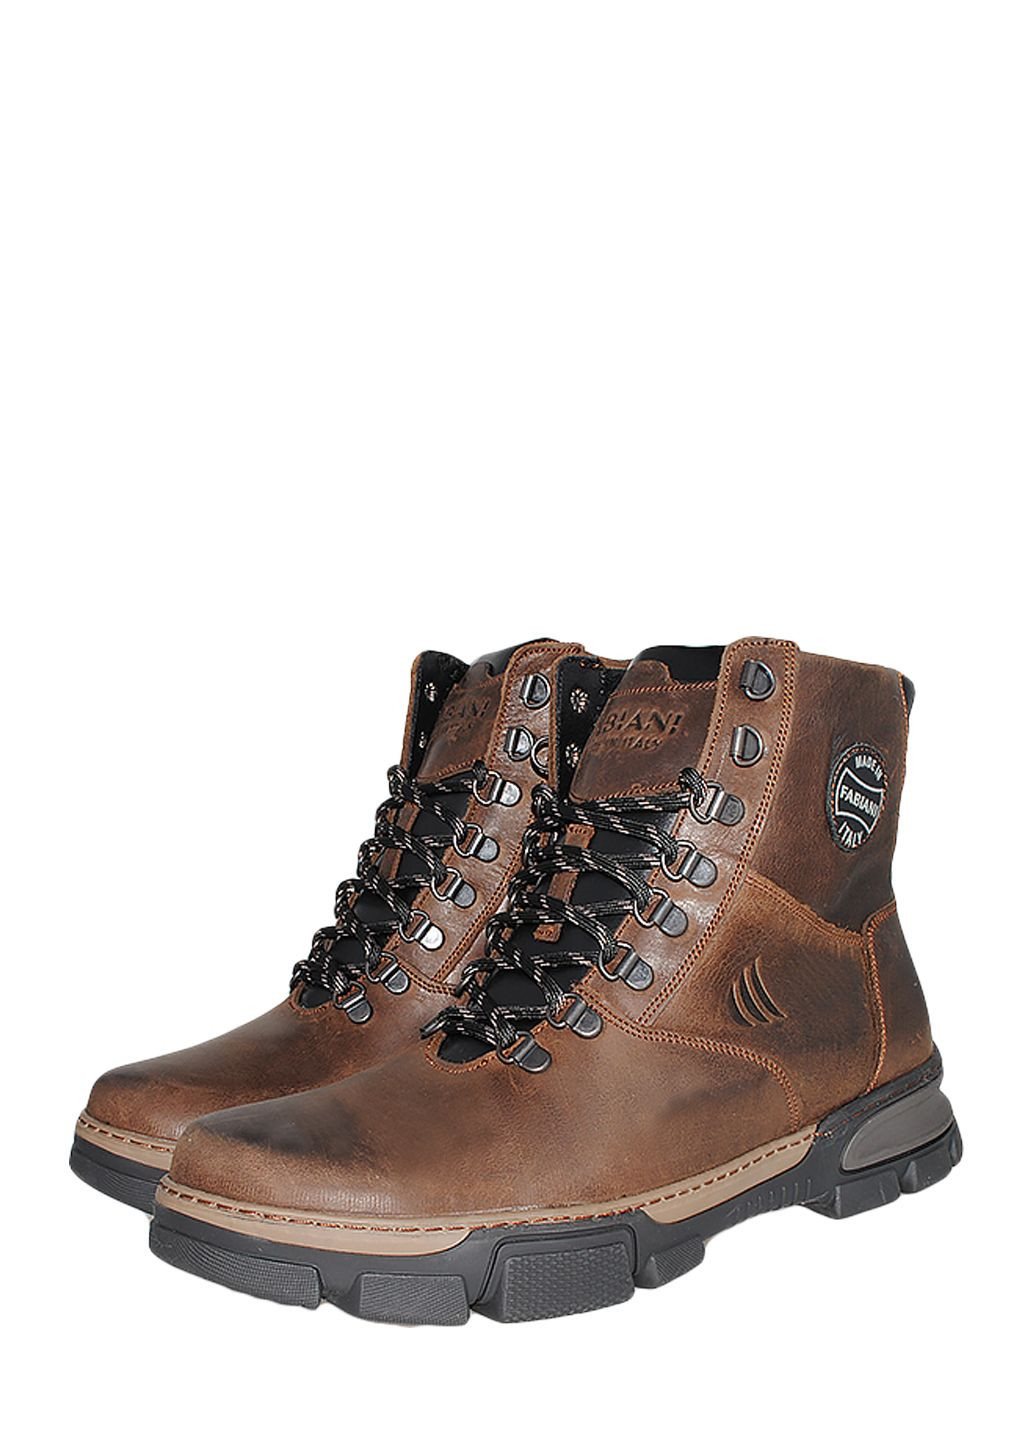 Коричневые зимние ботинки 147кор.кр коричневый Fabiani